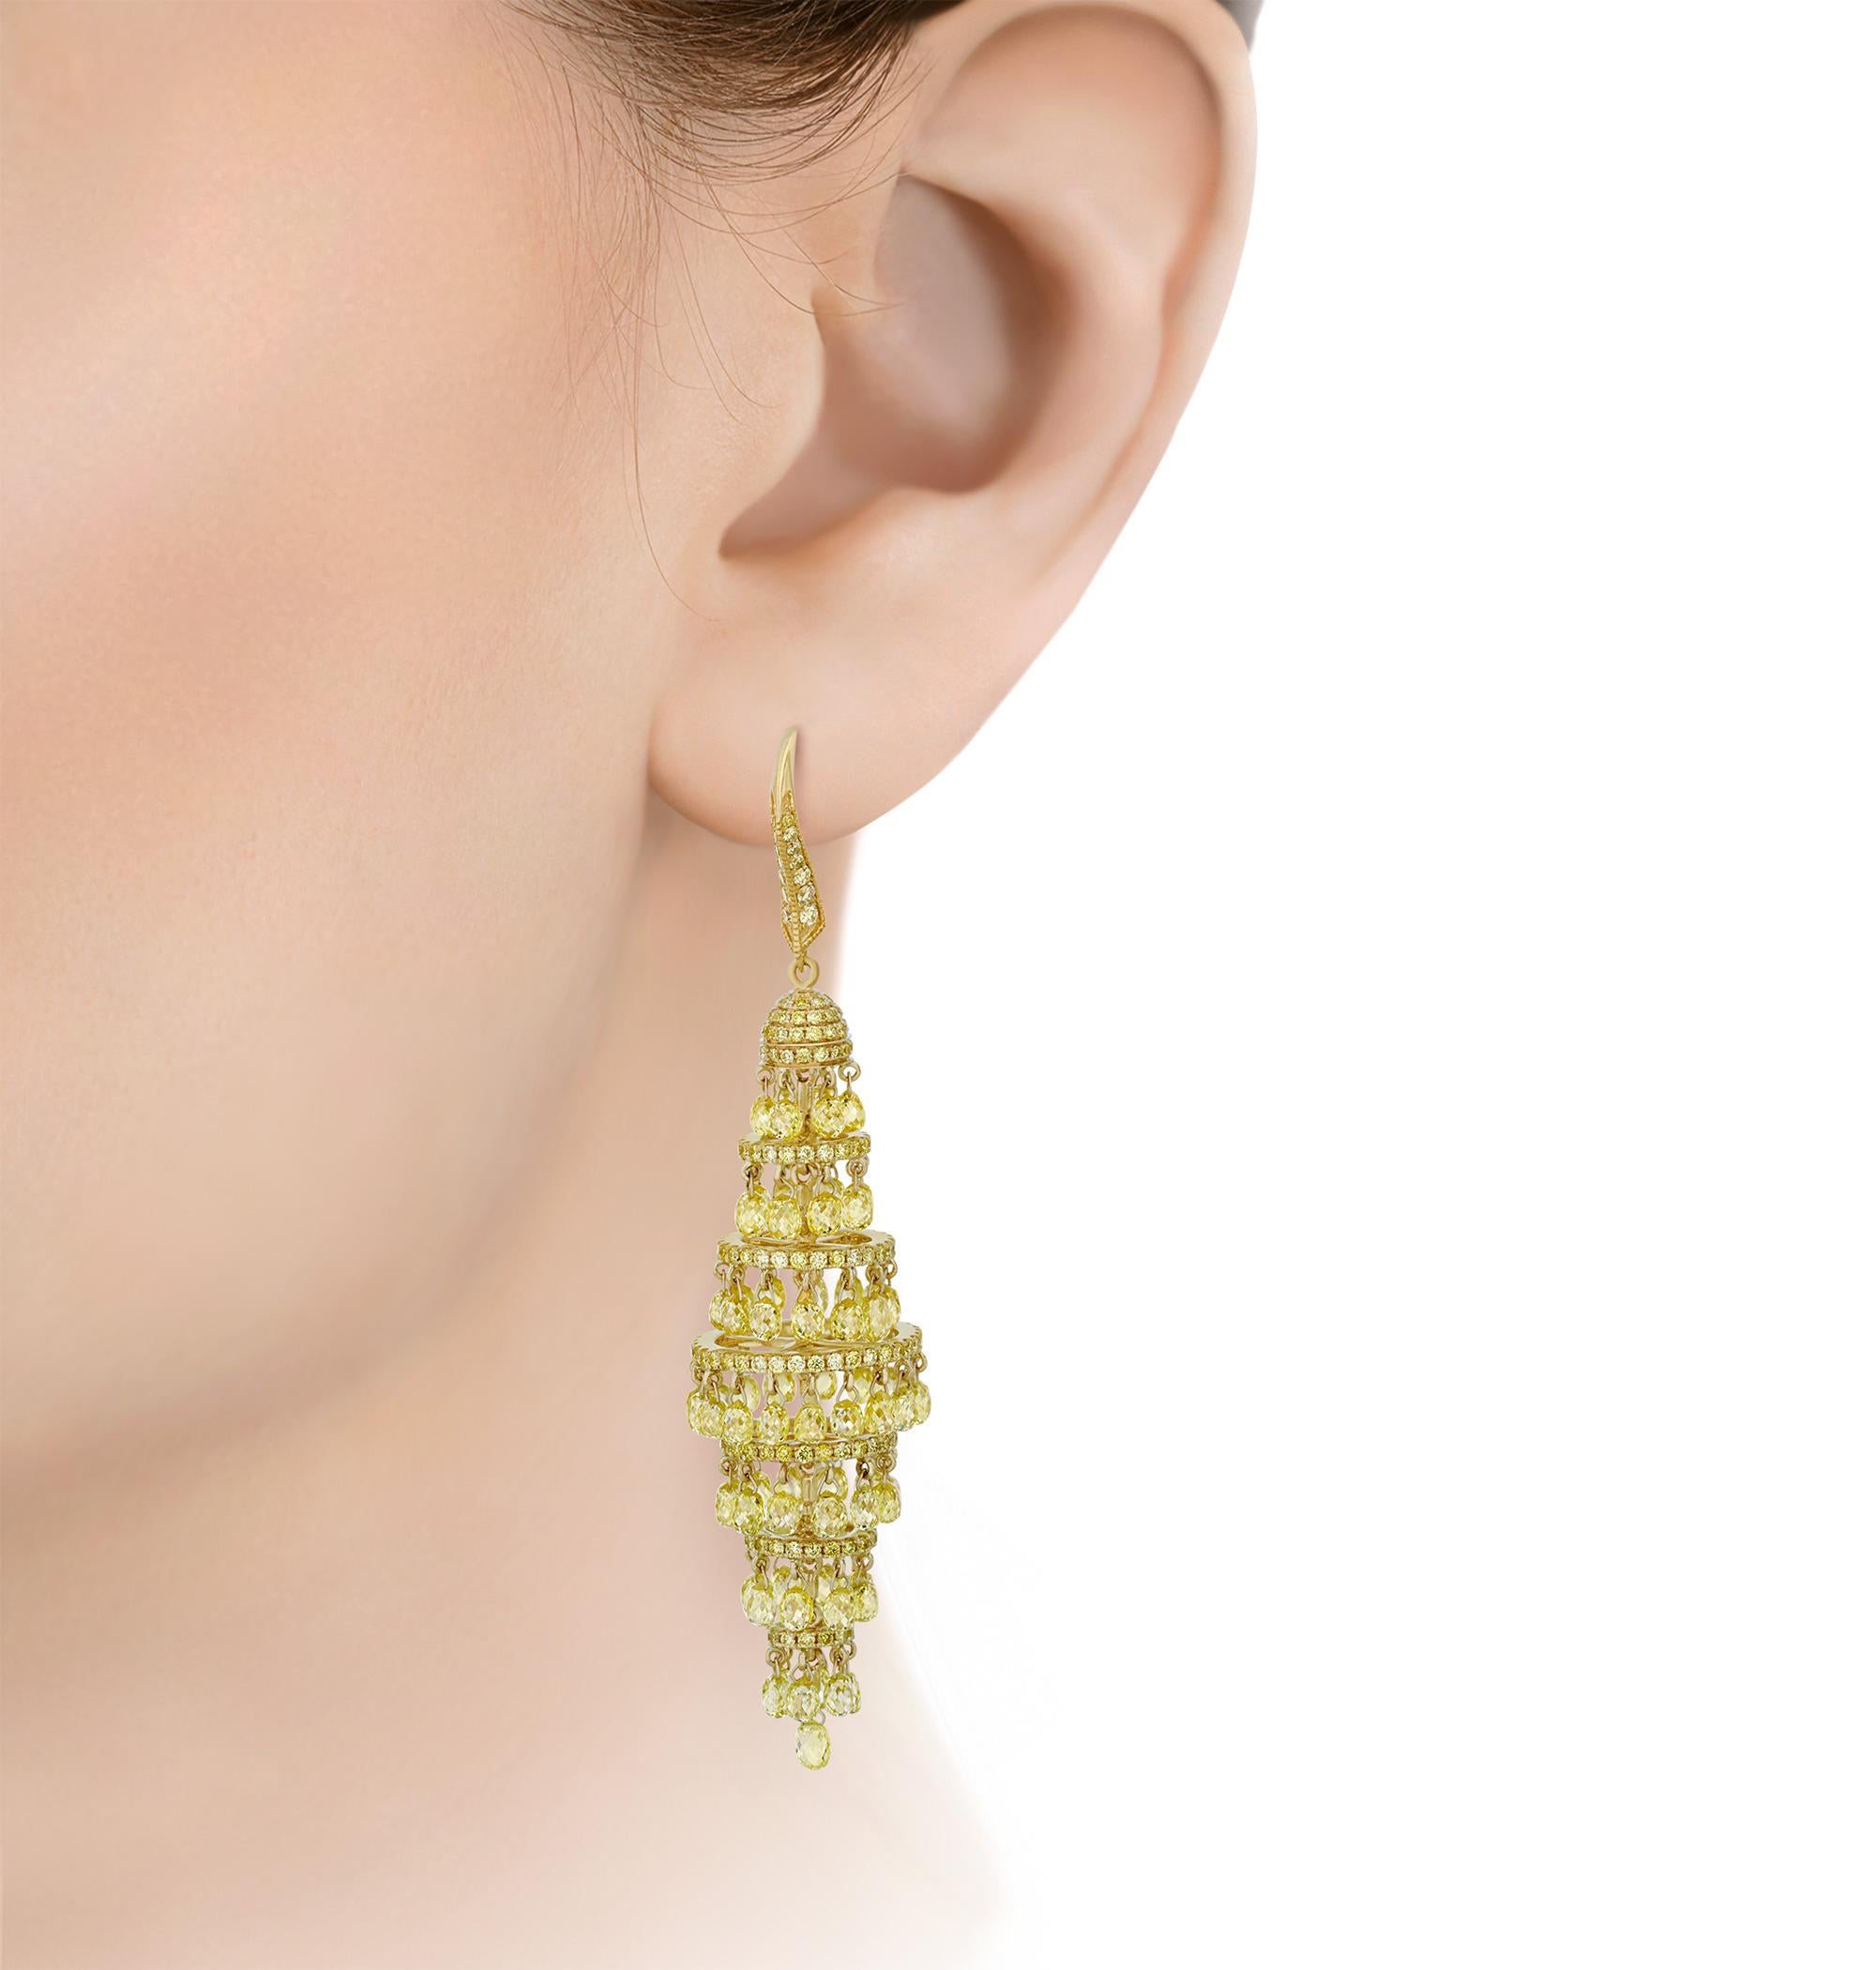 Strahlende gelbe Diamanten blenden das Auge in diesem auffälligen Paar Kronleuchter-Ohrringe. Eine Fülle von gelben Diamanten im Briolett-Schliff von insgesamt 19,82 Karat tropft in diesem eleganten Kronleuchter-Design herab. Dieses glamouröse Paar